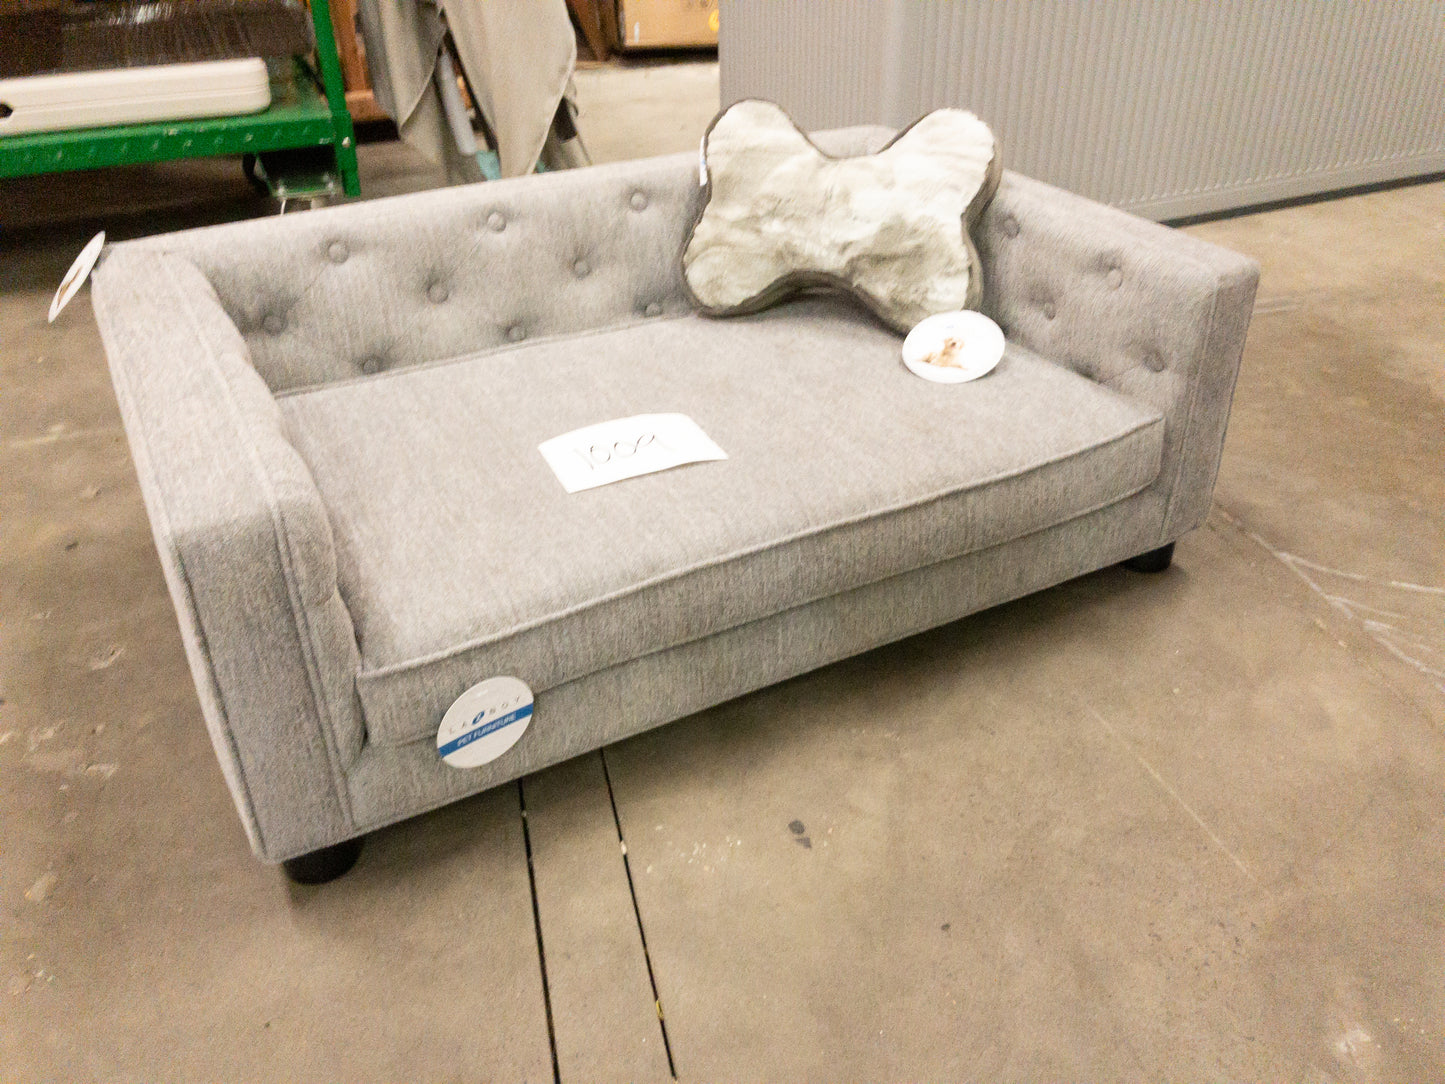 NEW - Costco - La-Z-Boy Franklin Dog Sofa with Pillow - Retail $249